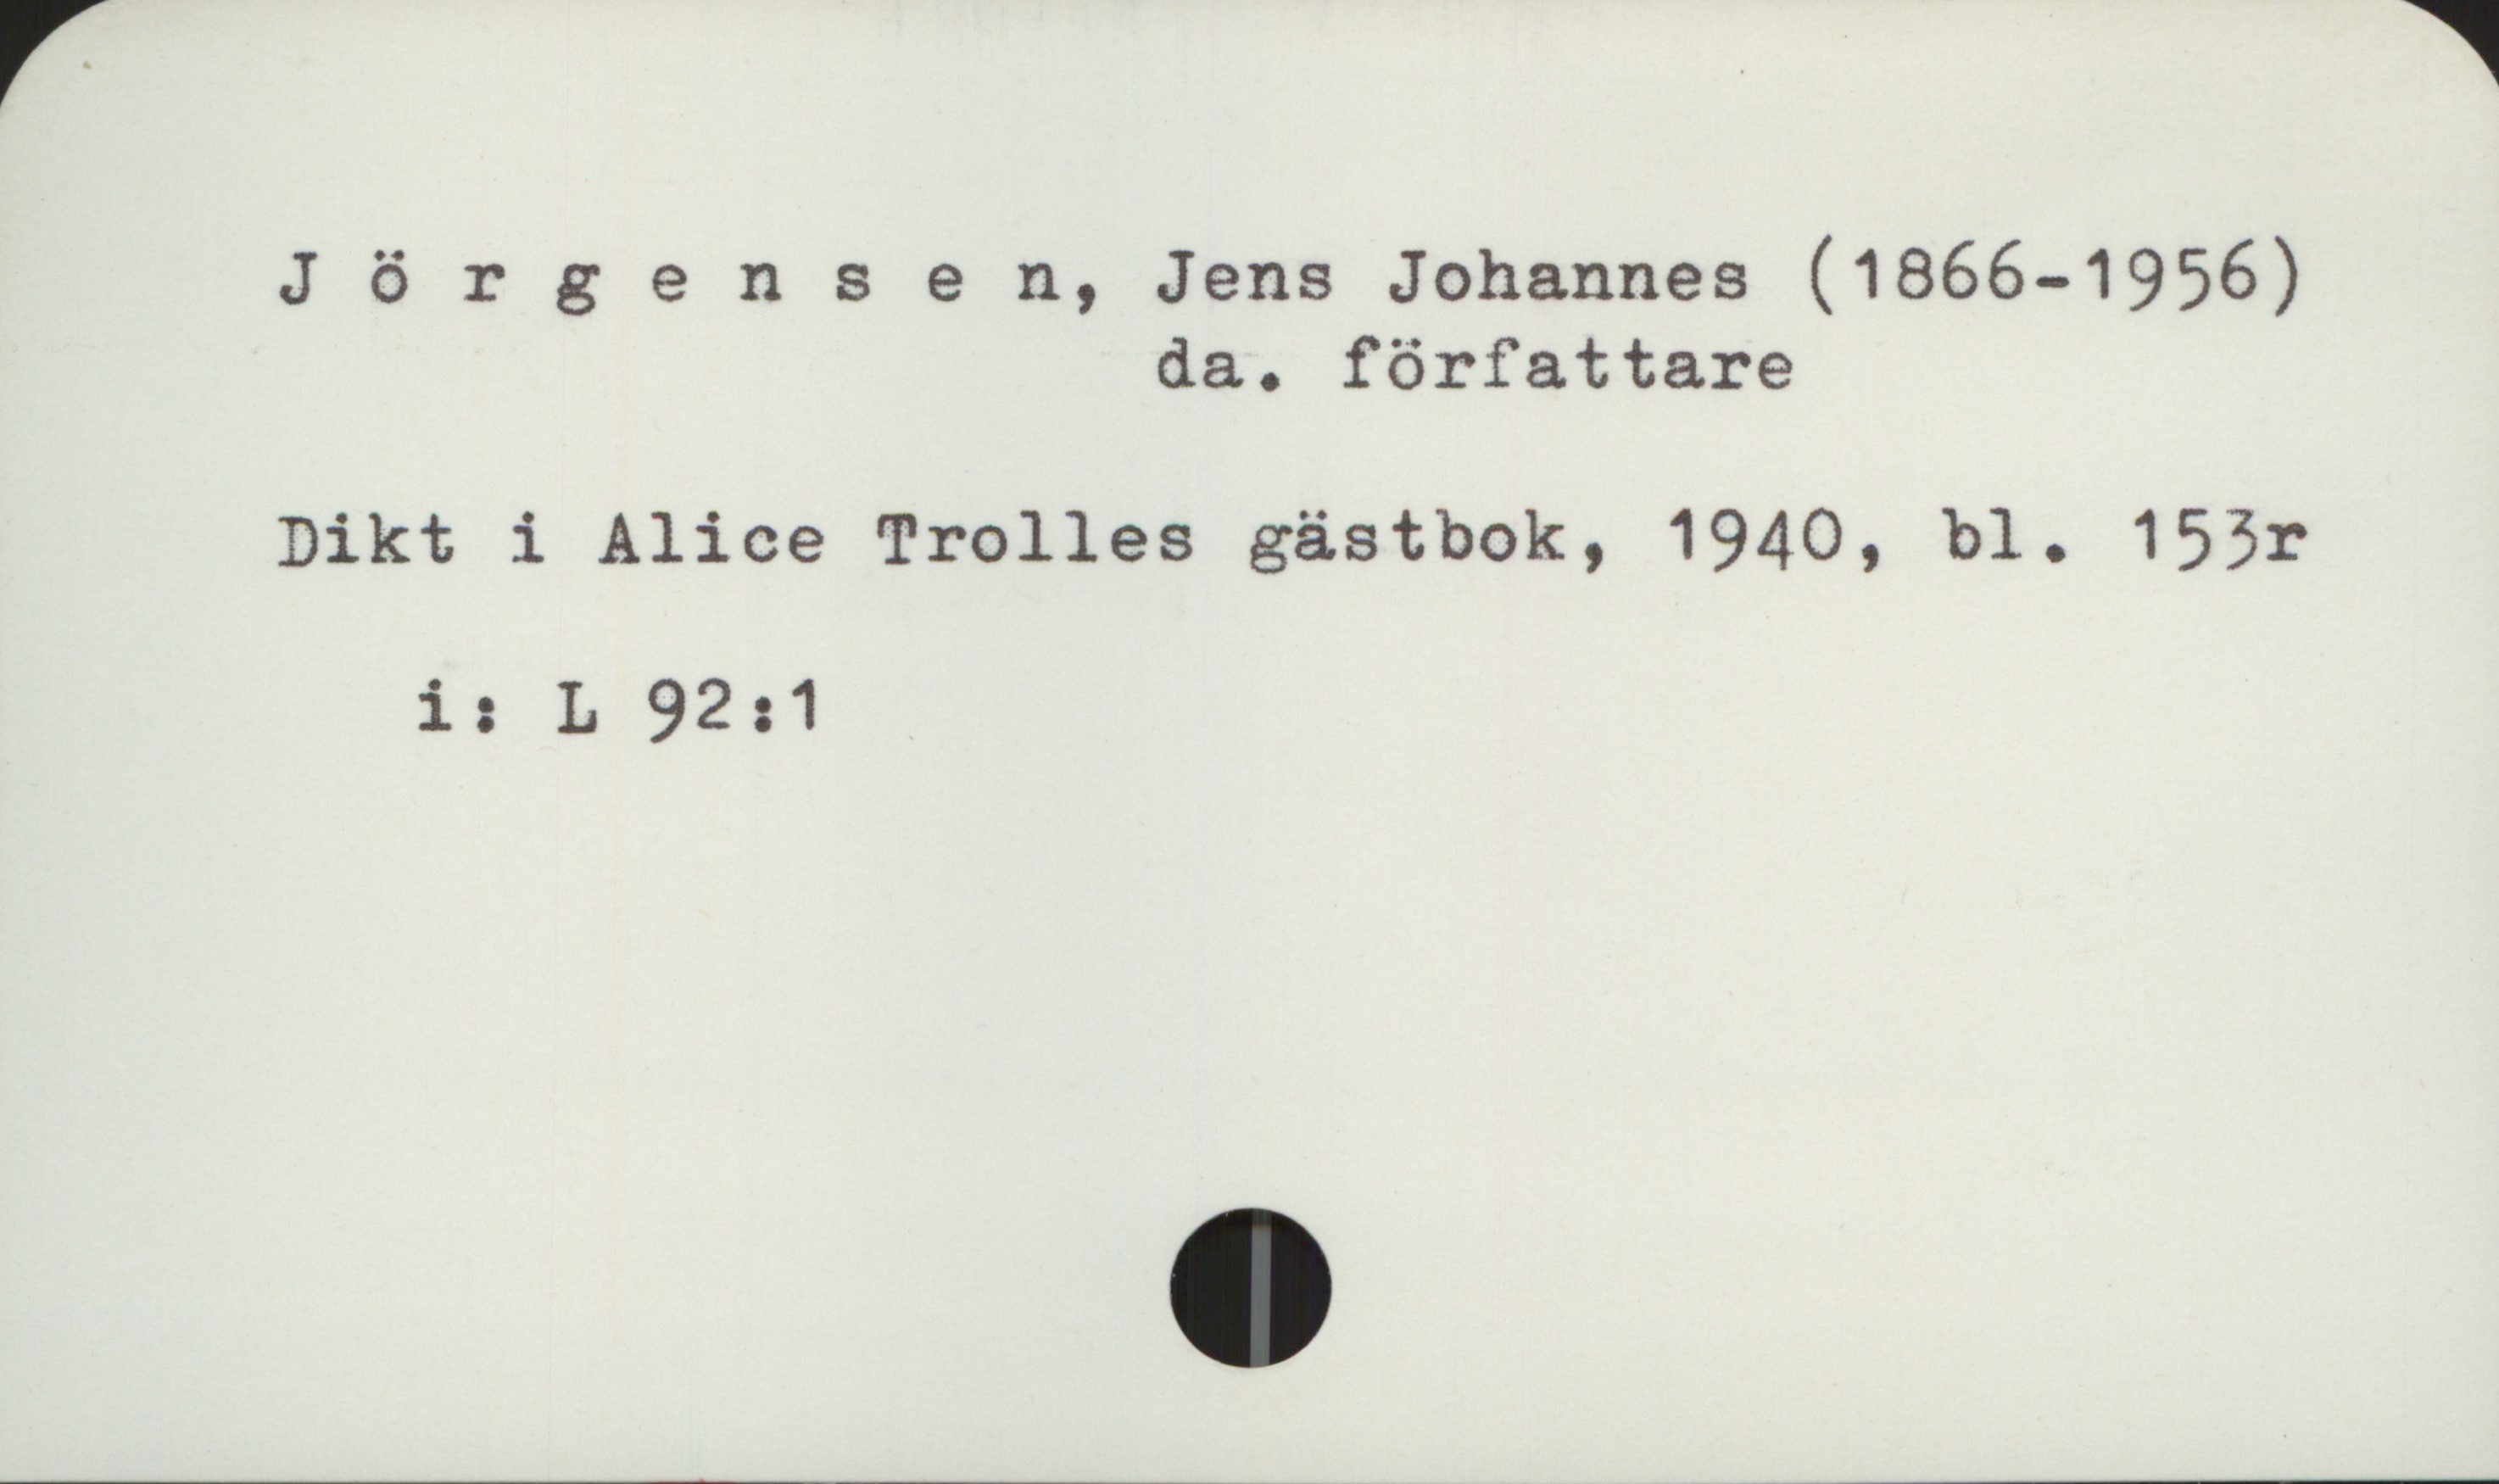 Jørgensen, Johannes (1866-1956) Jörgensen, Jens Johannes (1866-1956)
                      da. författare

Dikt i Alice Trolles gästbok, 1940, bl. 153r
      i:  L 92:1